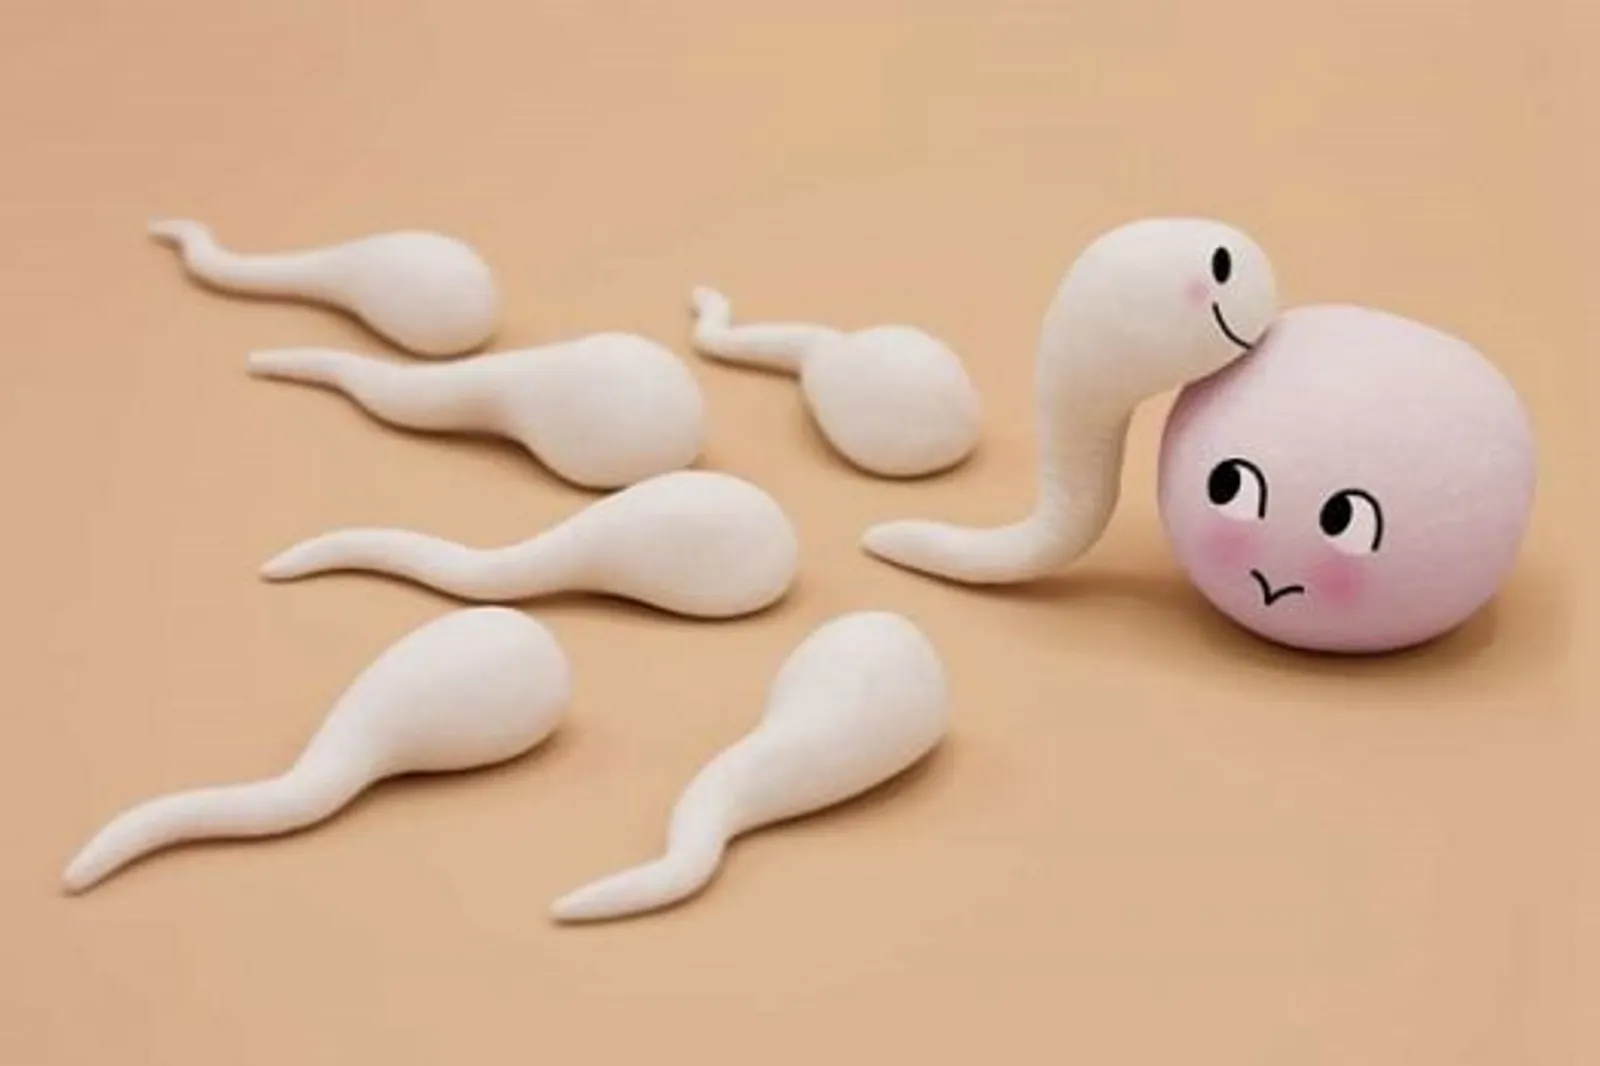 Manfaat Sperma Bagi Perempuan, Mitos atau Fakta?